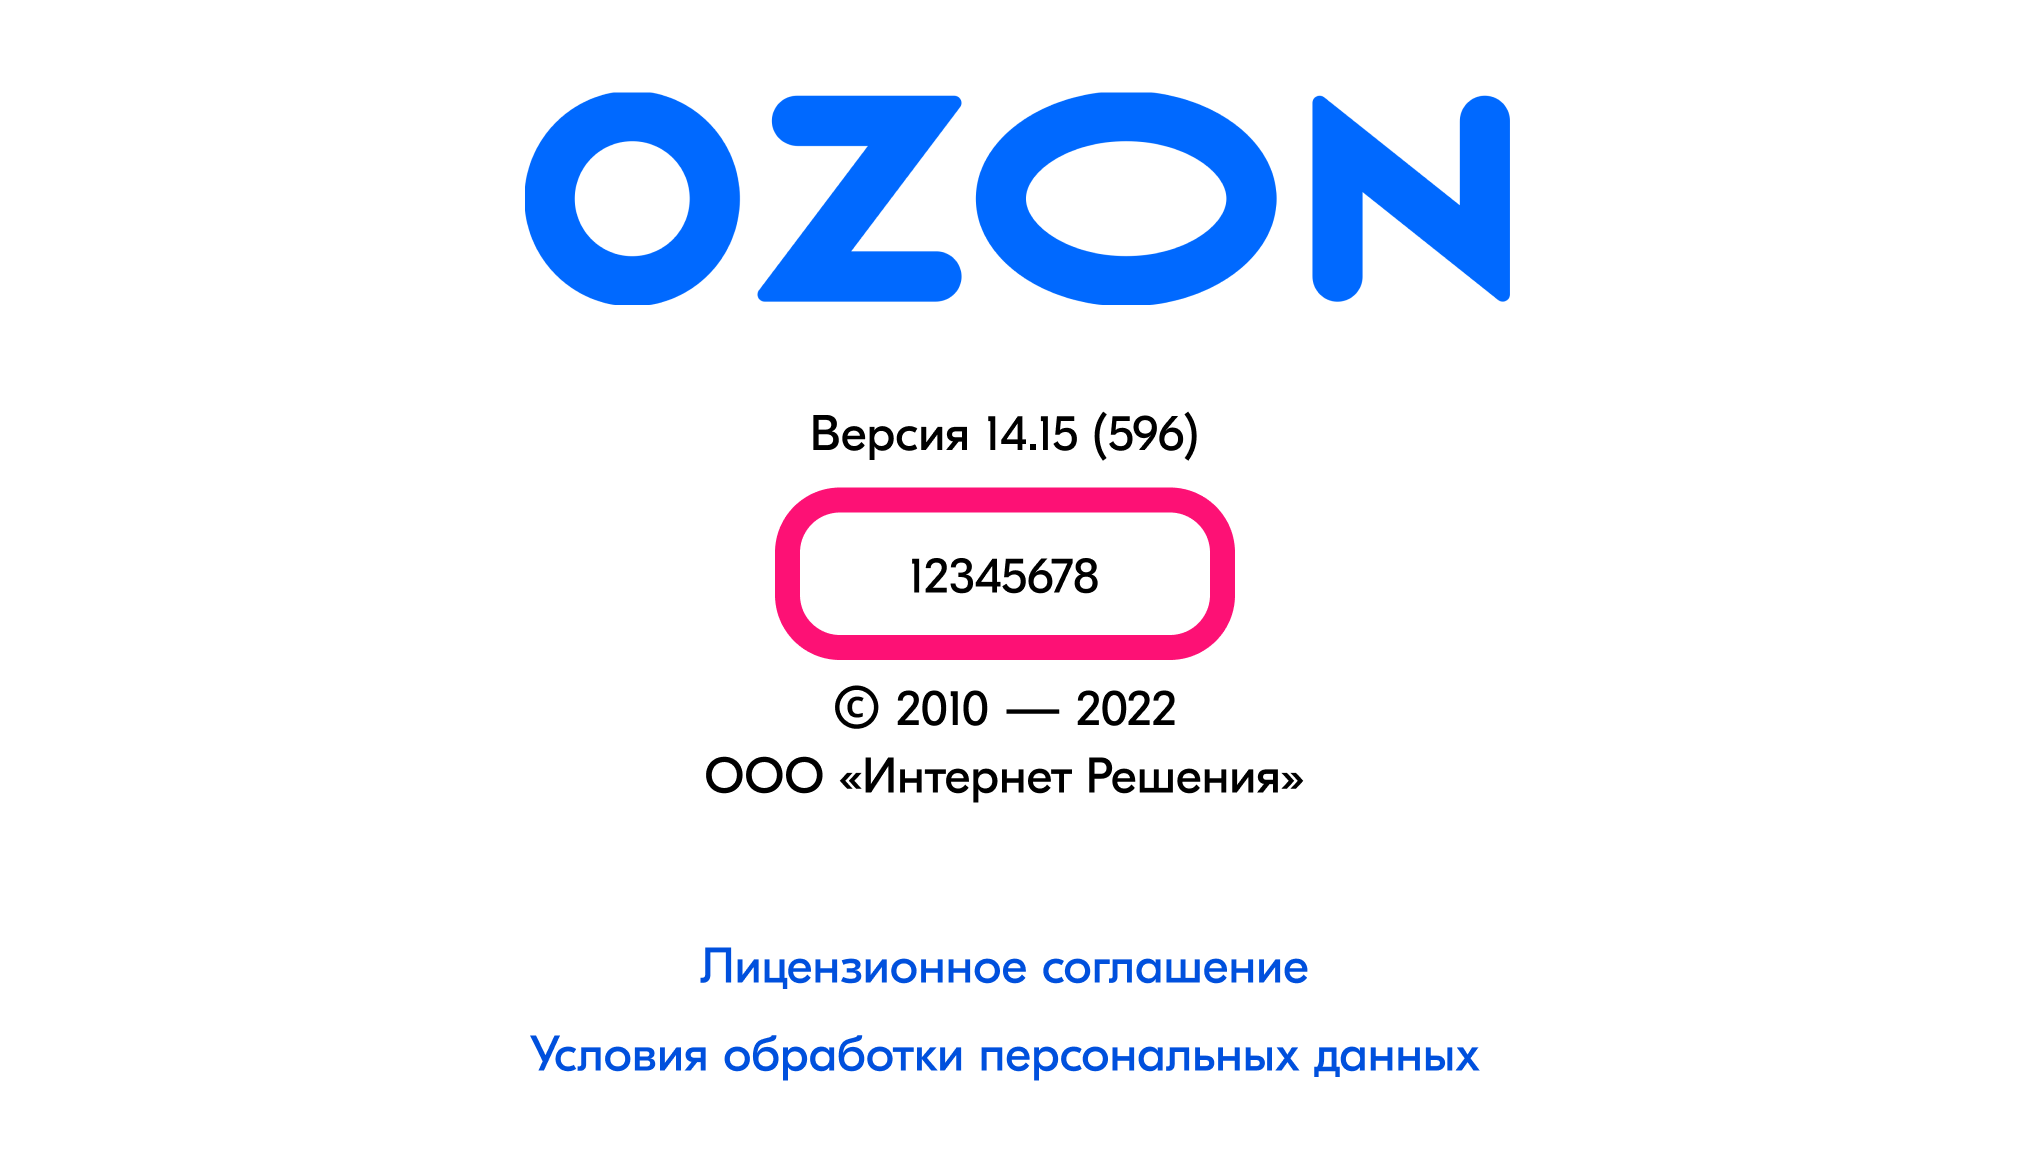 Как использовать ozon. Озон ID. Идентификатор Озон. Озон идентификатор клиента. Как узнать OZON ID.